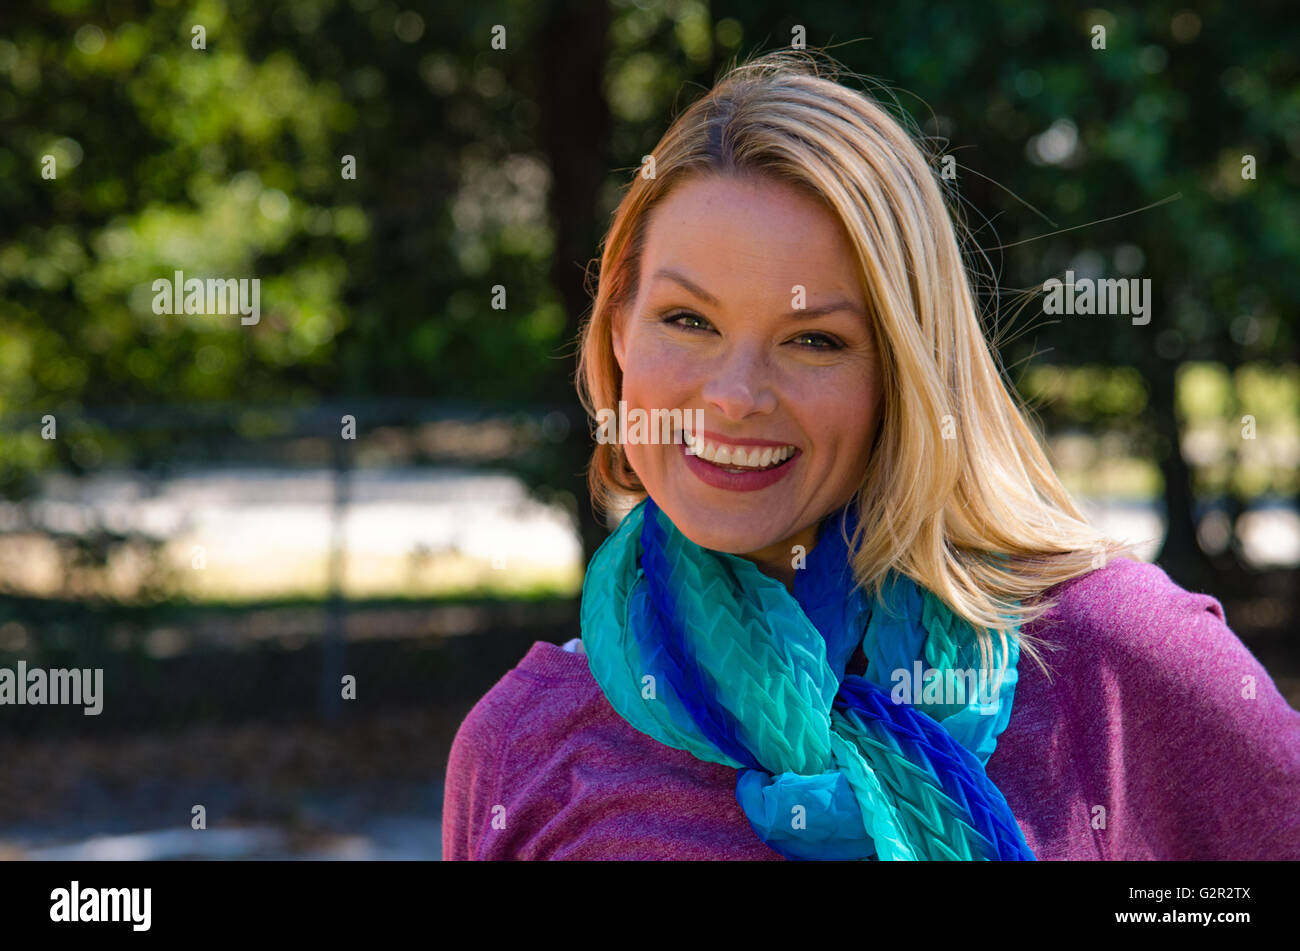 Porträt von lächelnden blonden Frau in lila mit blauen Schal außerhalb Stockfoto